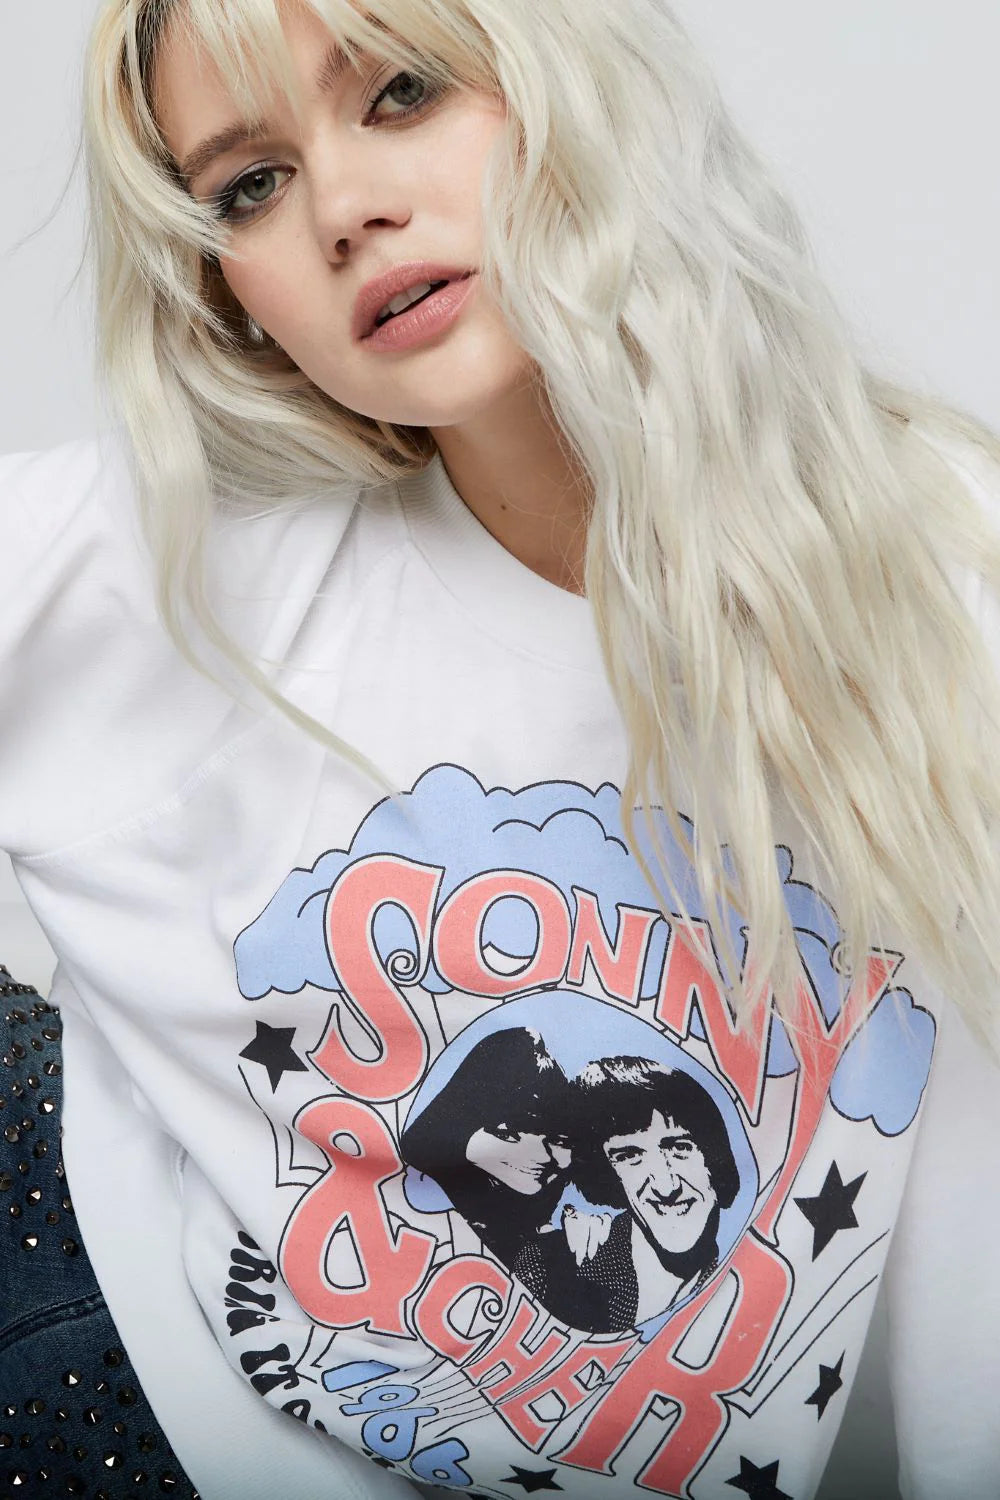 Sonny & Cher Sweatshirt Sonny & Cher Sweatshirt Sonny & Cher Sweatshirt Sonny & Cher Sweatshirt Sonny & Cher Sweatshirt